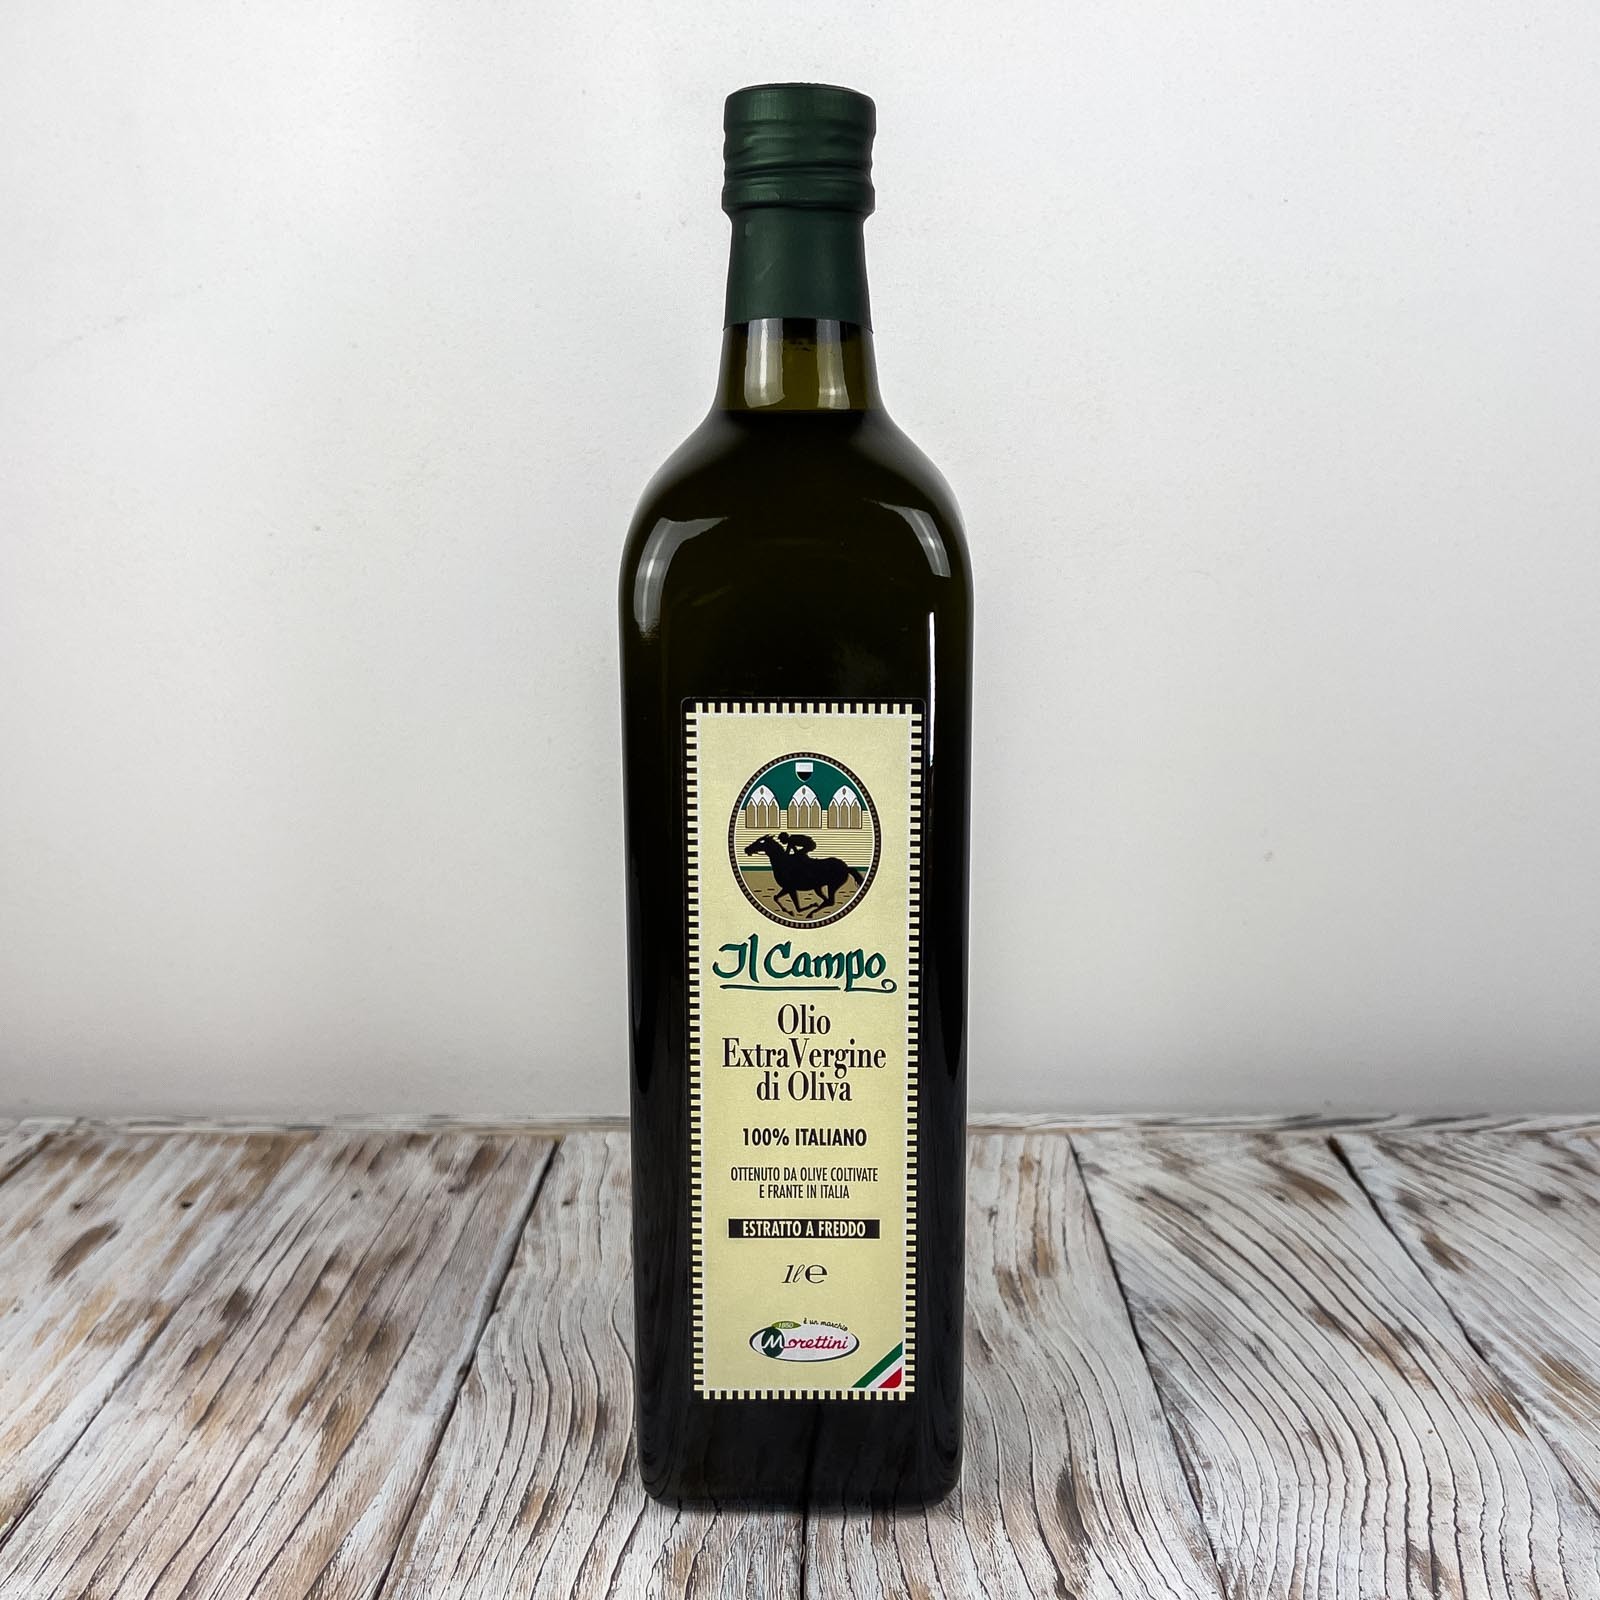 „Il Campo 100% Italiano”, natives Olivenöl extra, hergestellt mit der Methode der Kaltverarbeitung von in Italien geernteten und gepressten Oliven - Produktionsjahr 2021/2022.